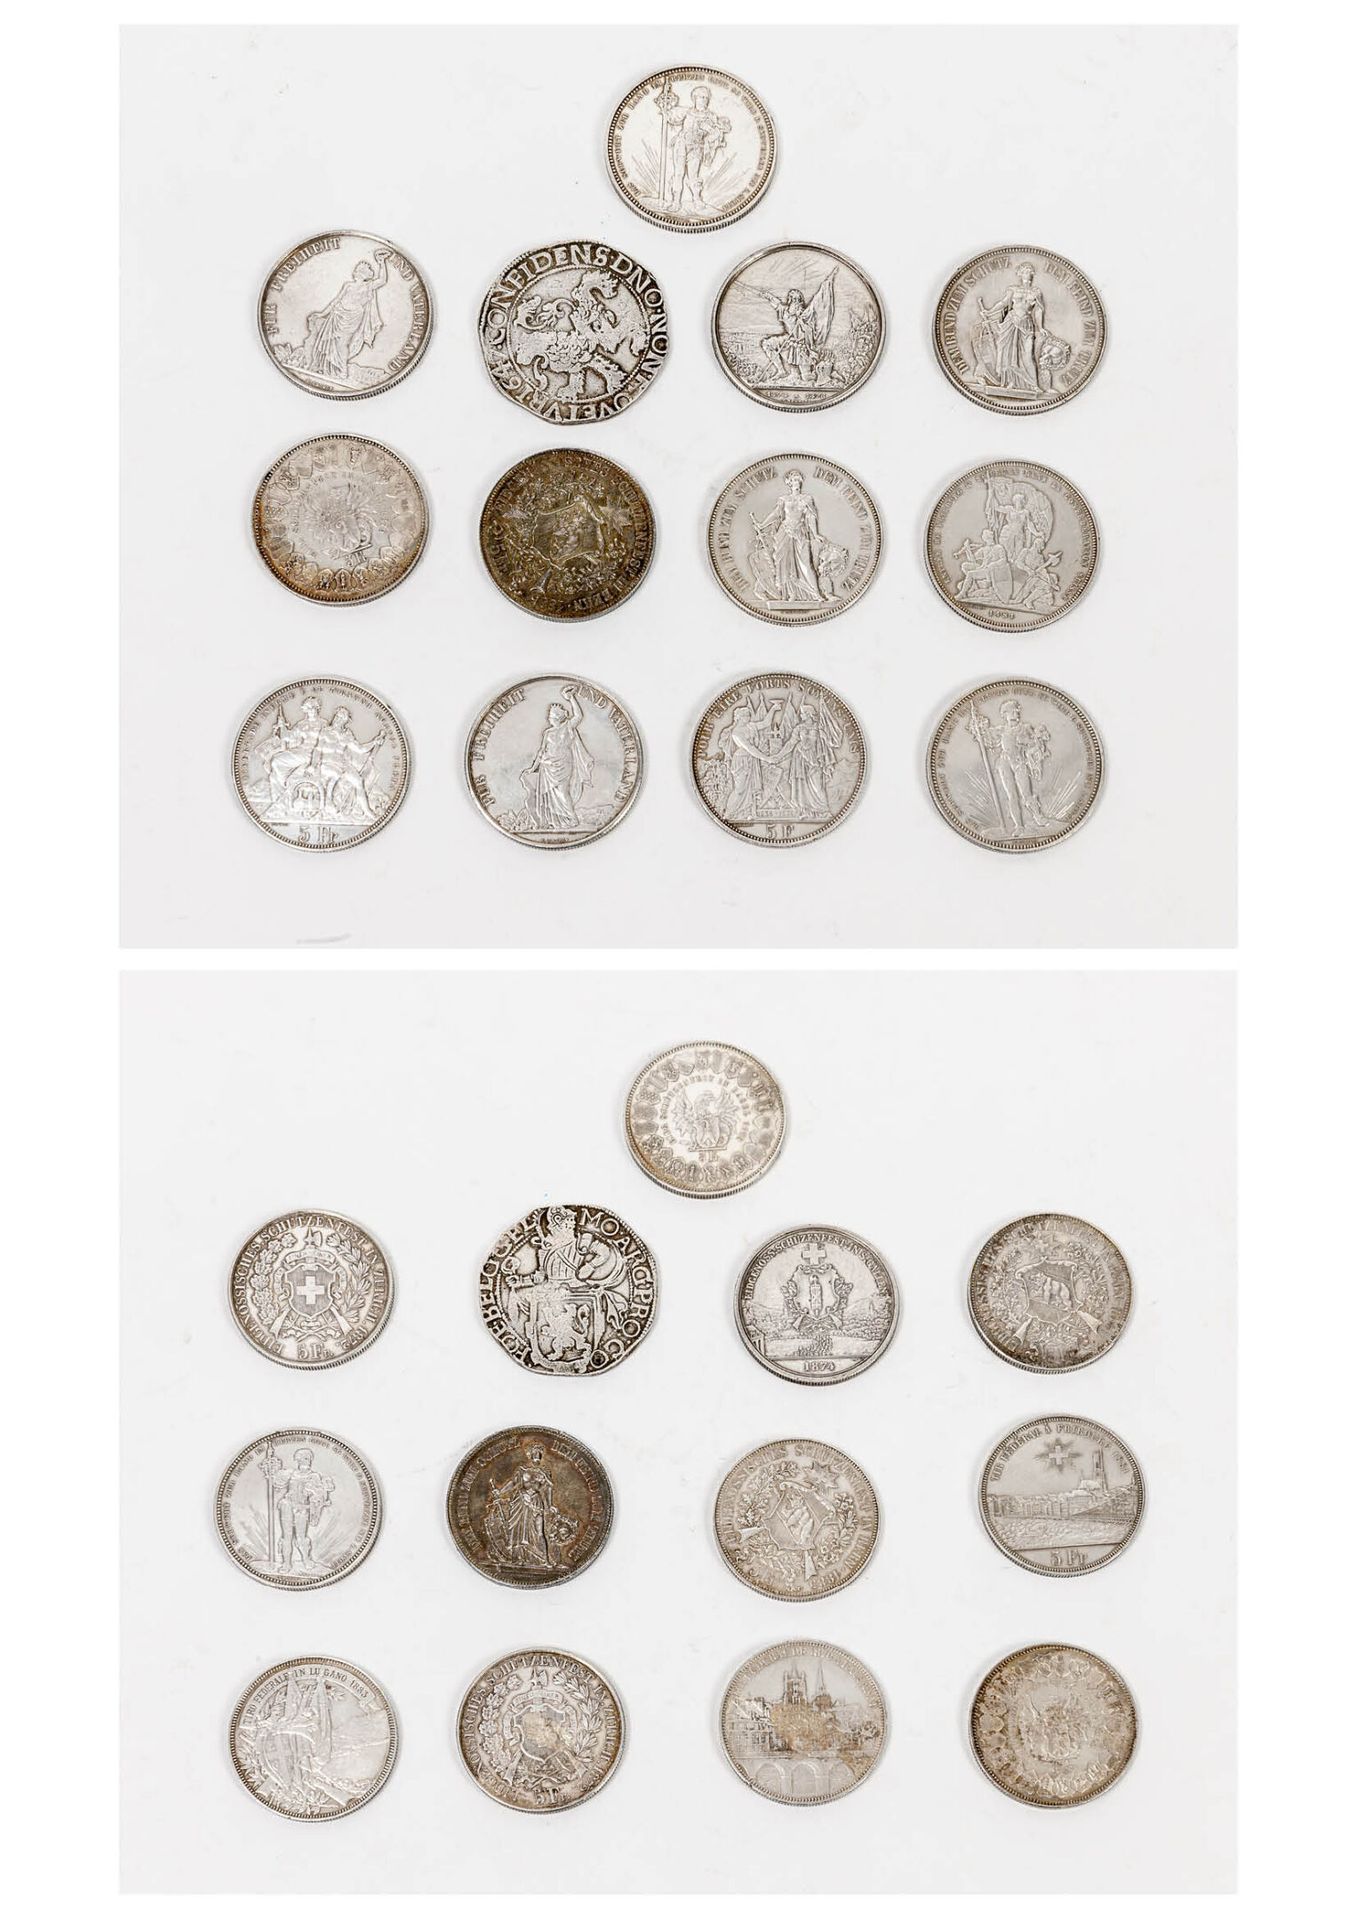 SUISSE 5 francos Tirada: 12 ejemplares

Friburgo 1881- Berna 1885: 2 ejemplares &hellip;